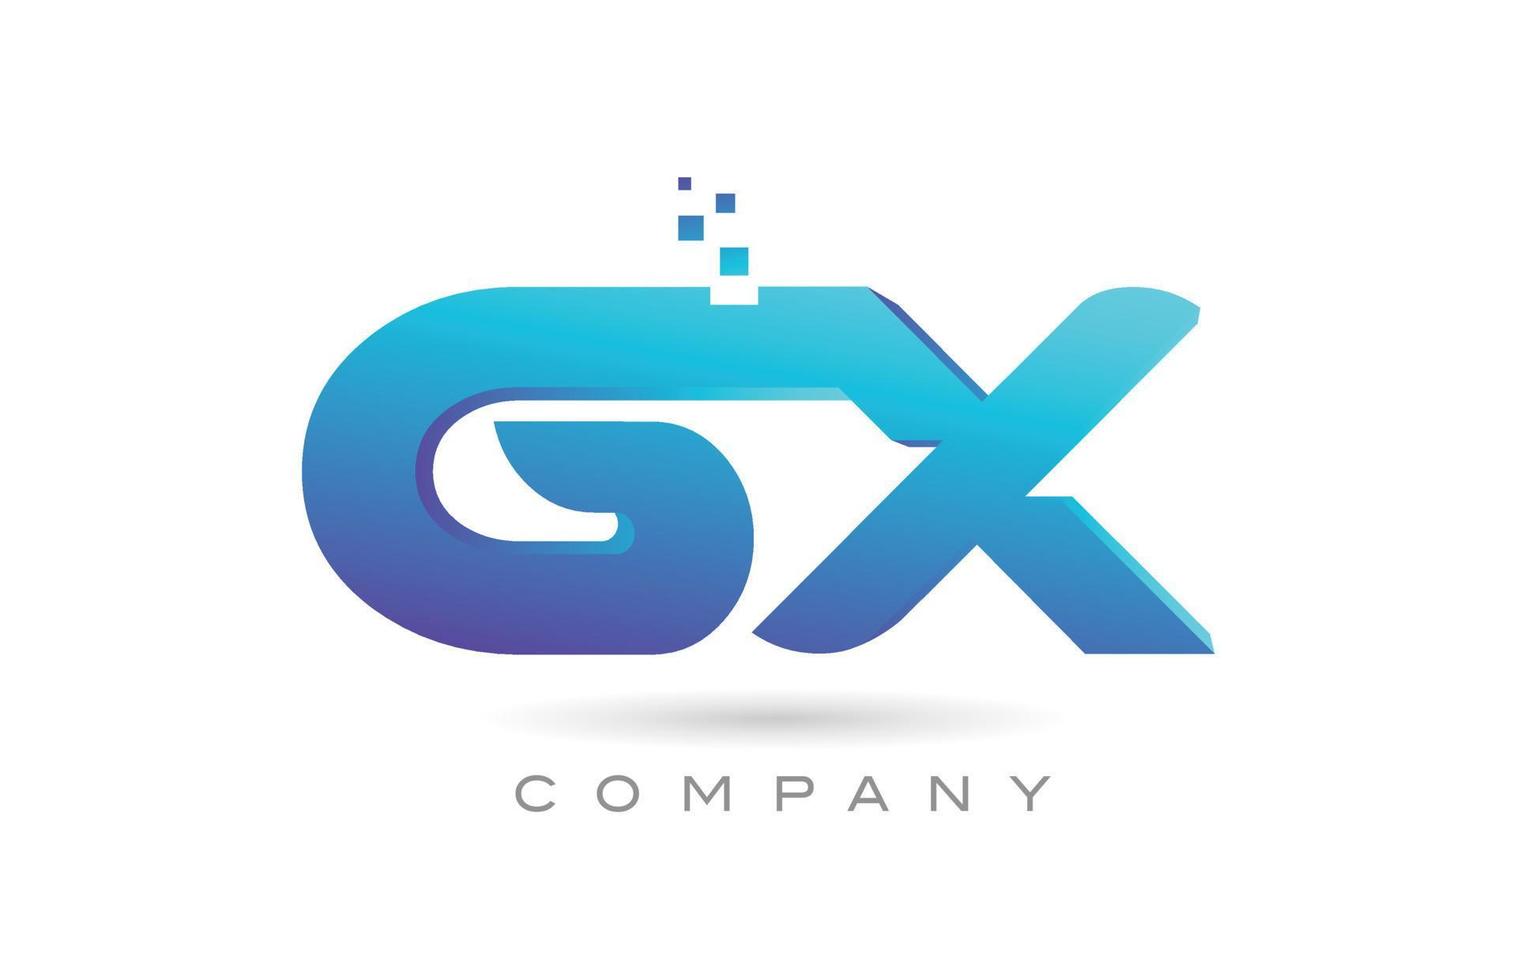 Diseño de combinación de iconos del logotipo de la letra del alfabeto gx. plantilla creativa para negocios y empresas. vector